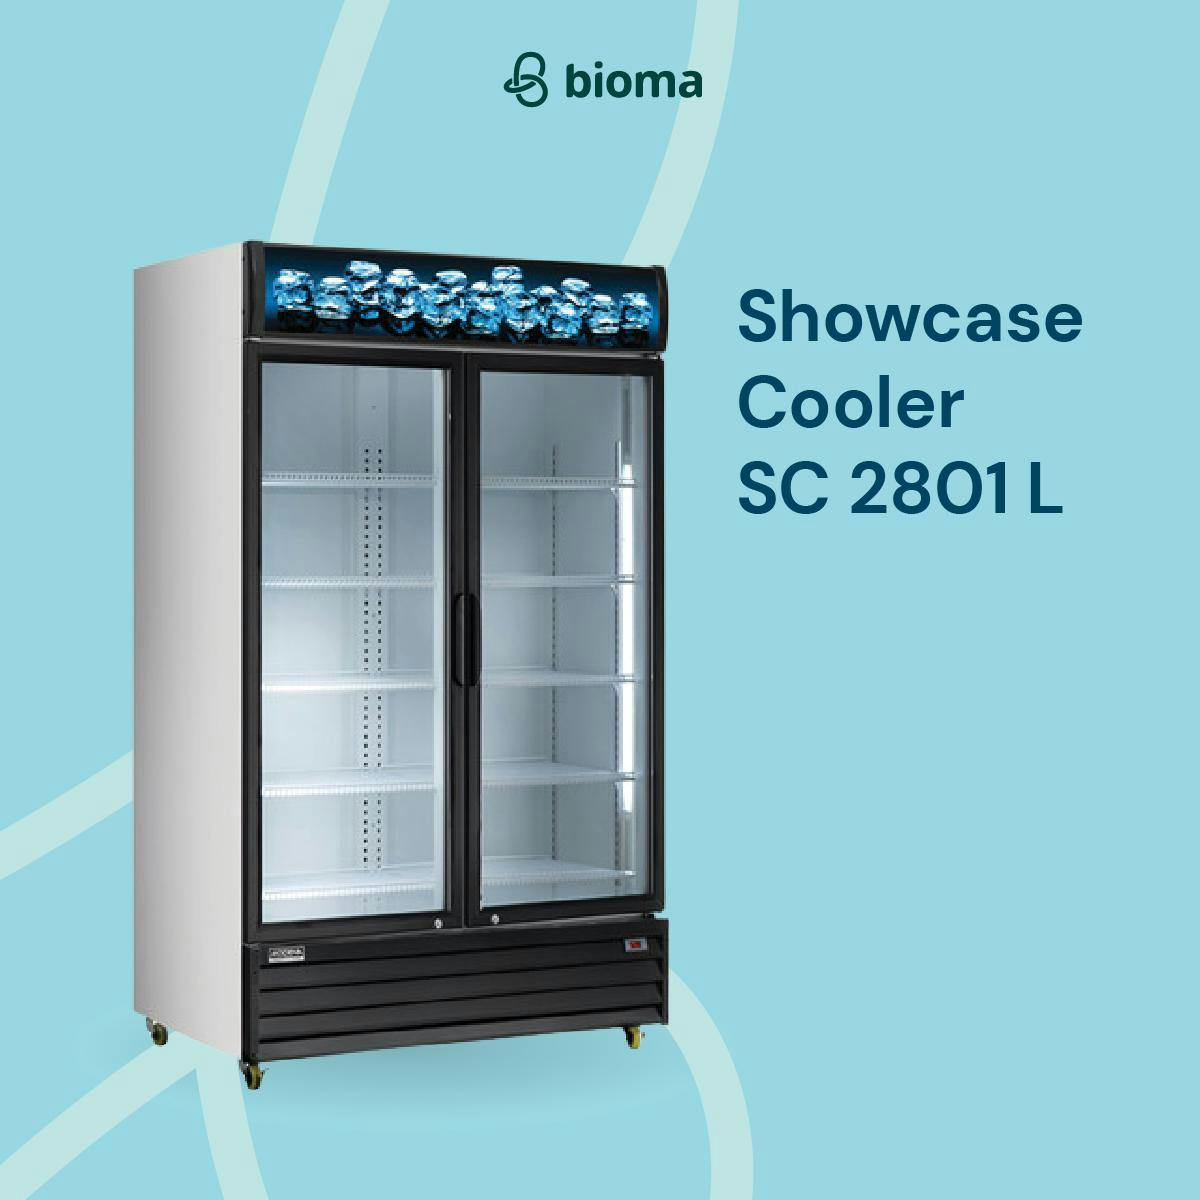 Image 328 Showcase Cooler SC 2801 L